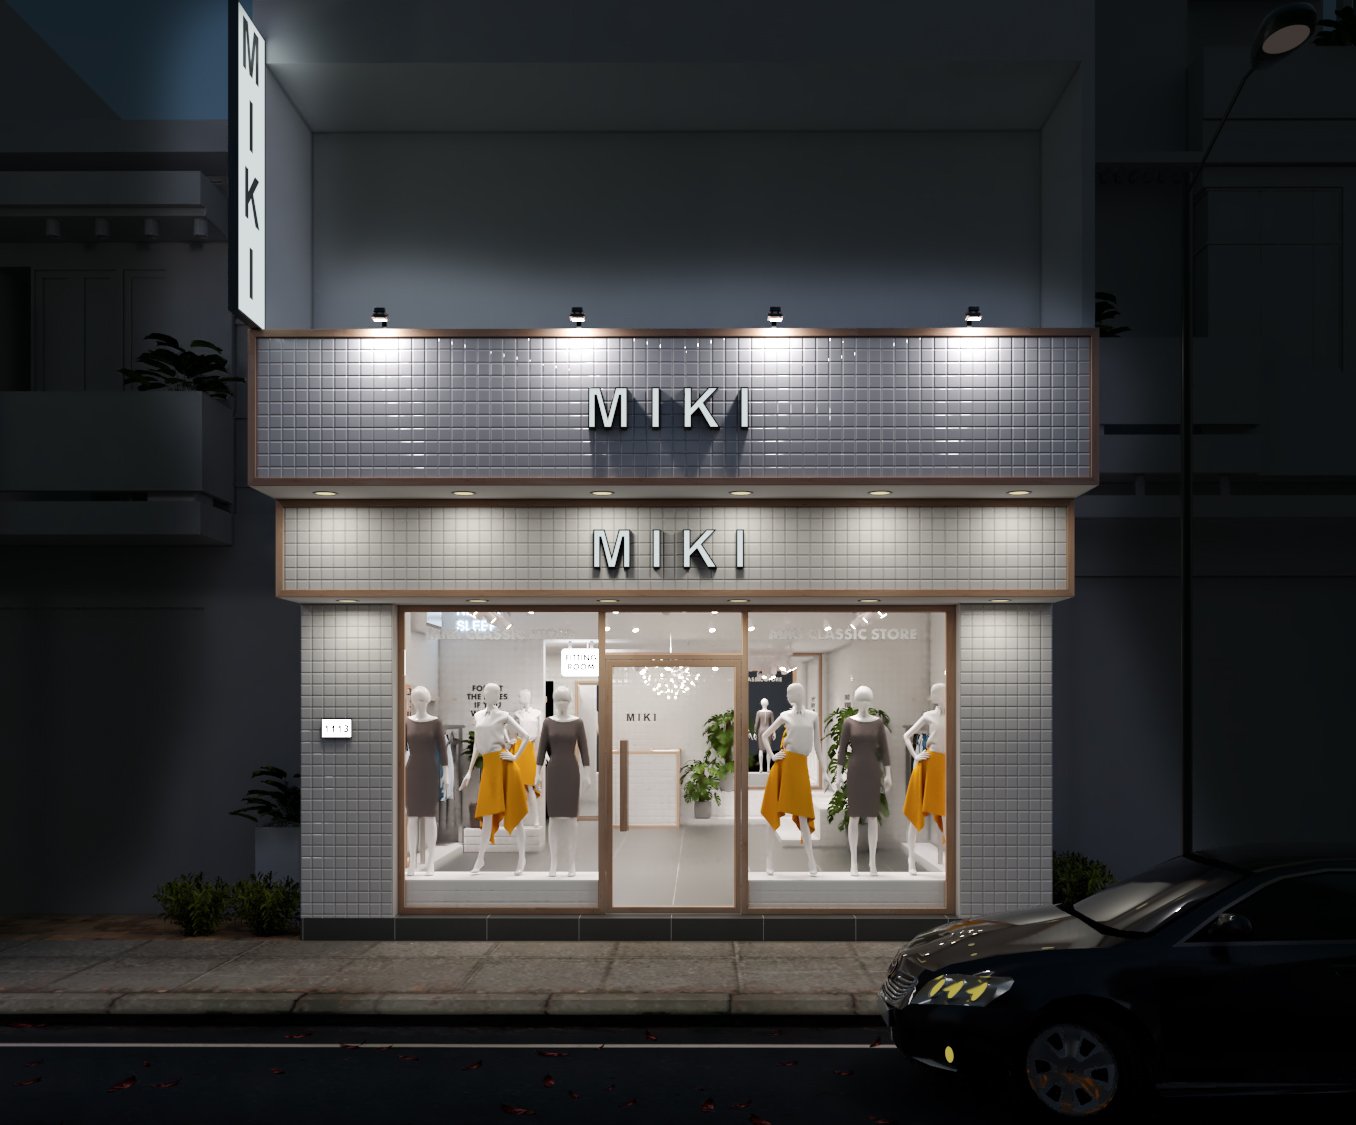 Thiết kế nội thất Shop tại Hồ Chí Minh DỤ ÁN MIKI FASHION 1575960985 8